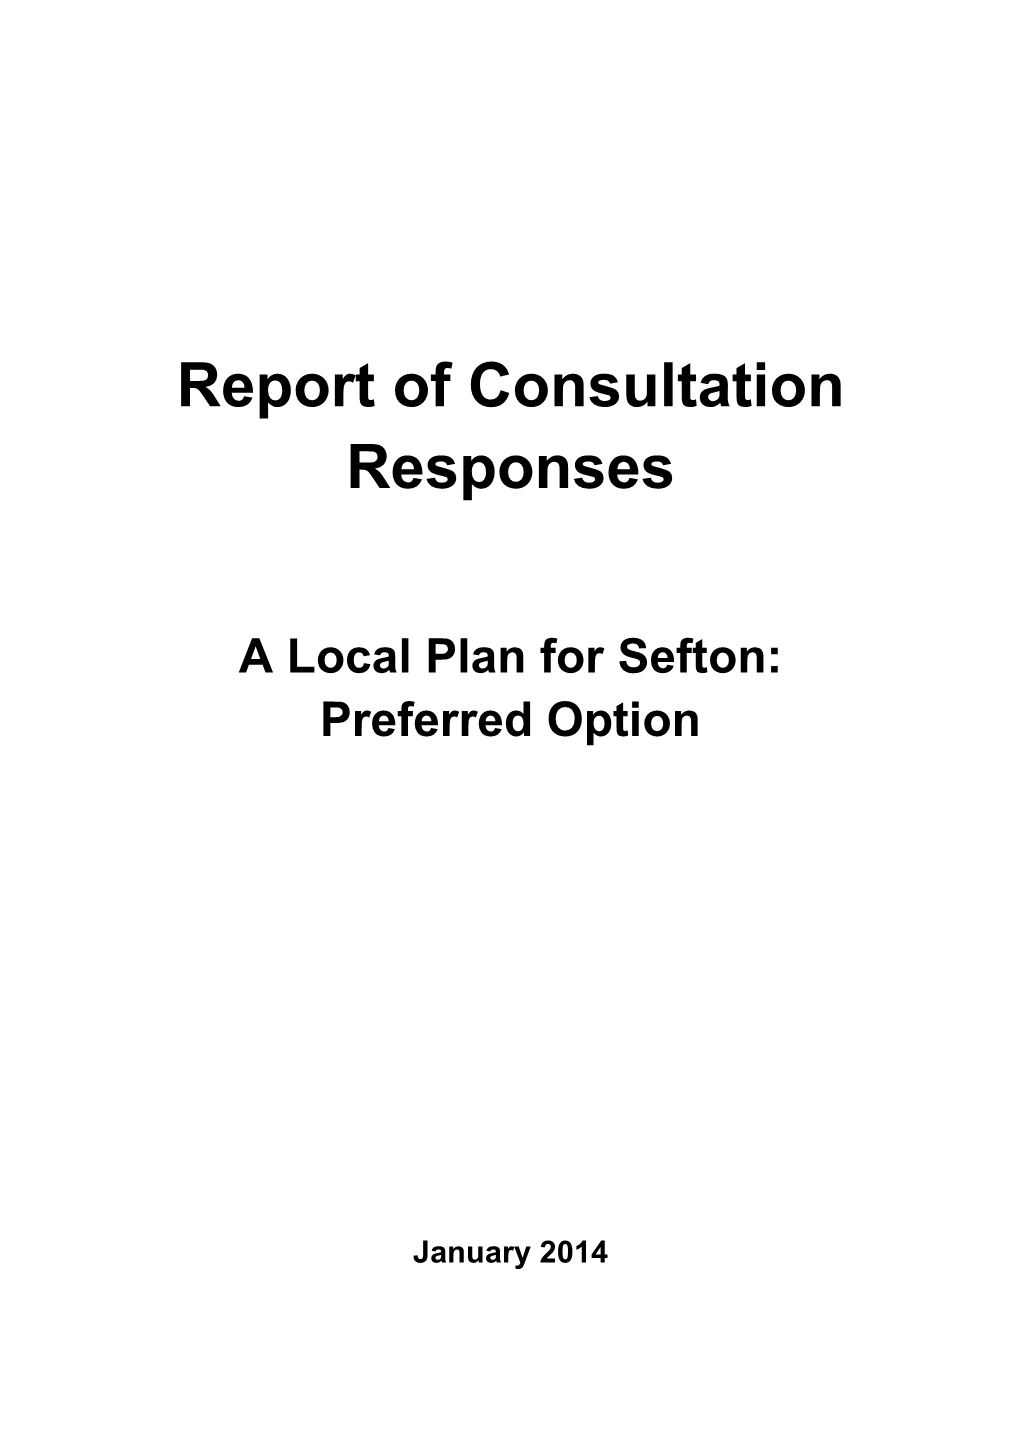 Report of Consultation Responses